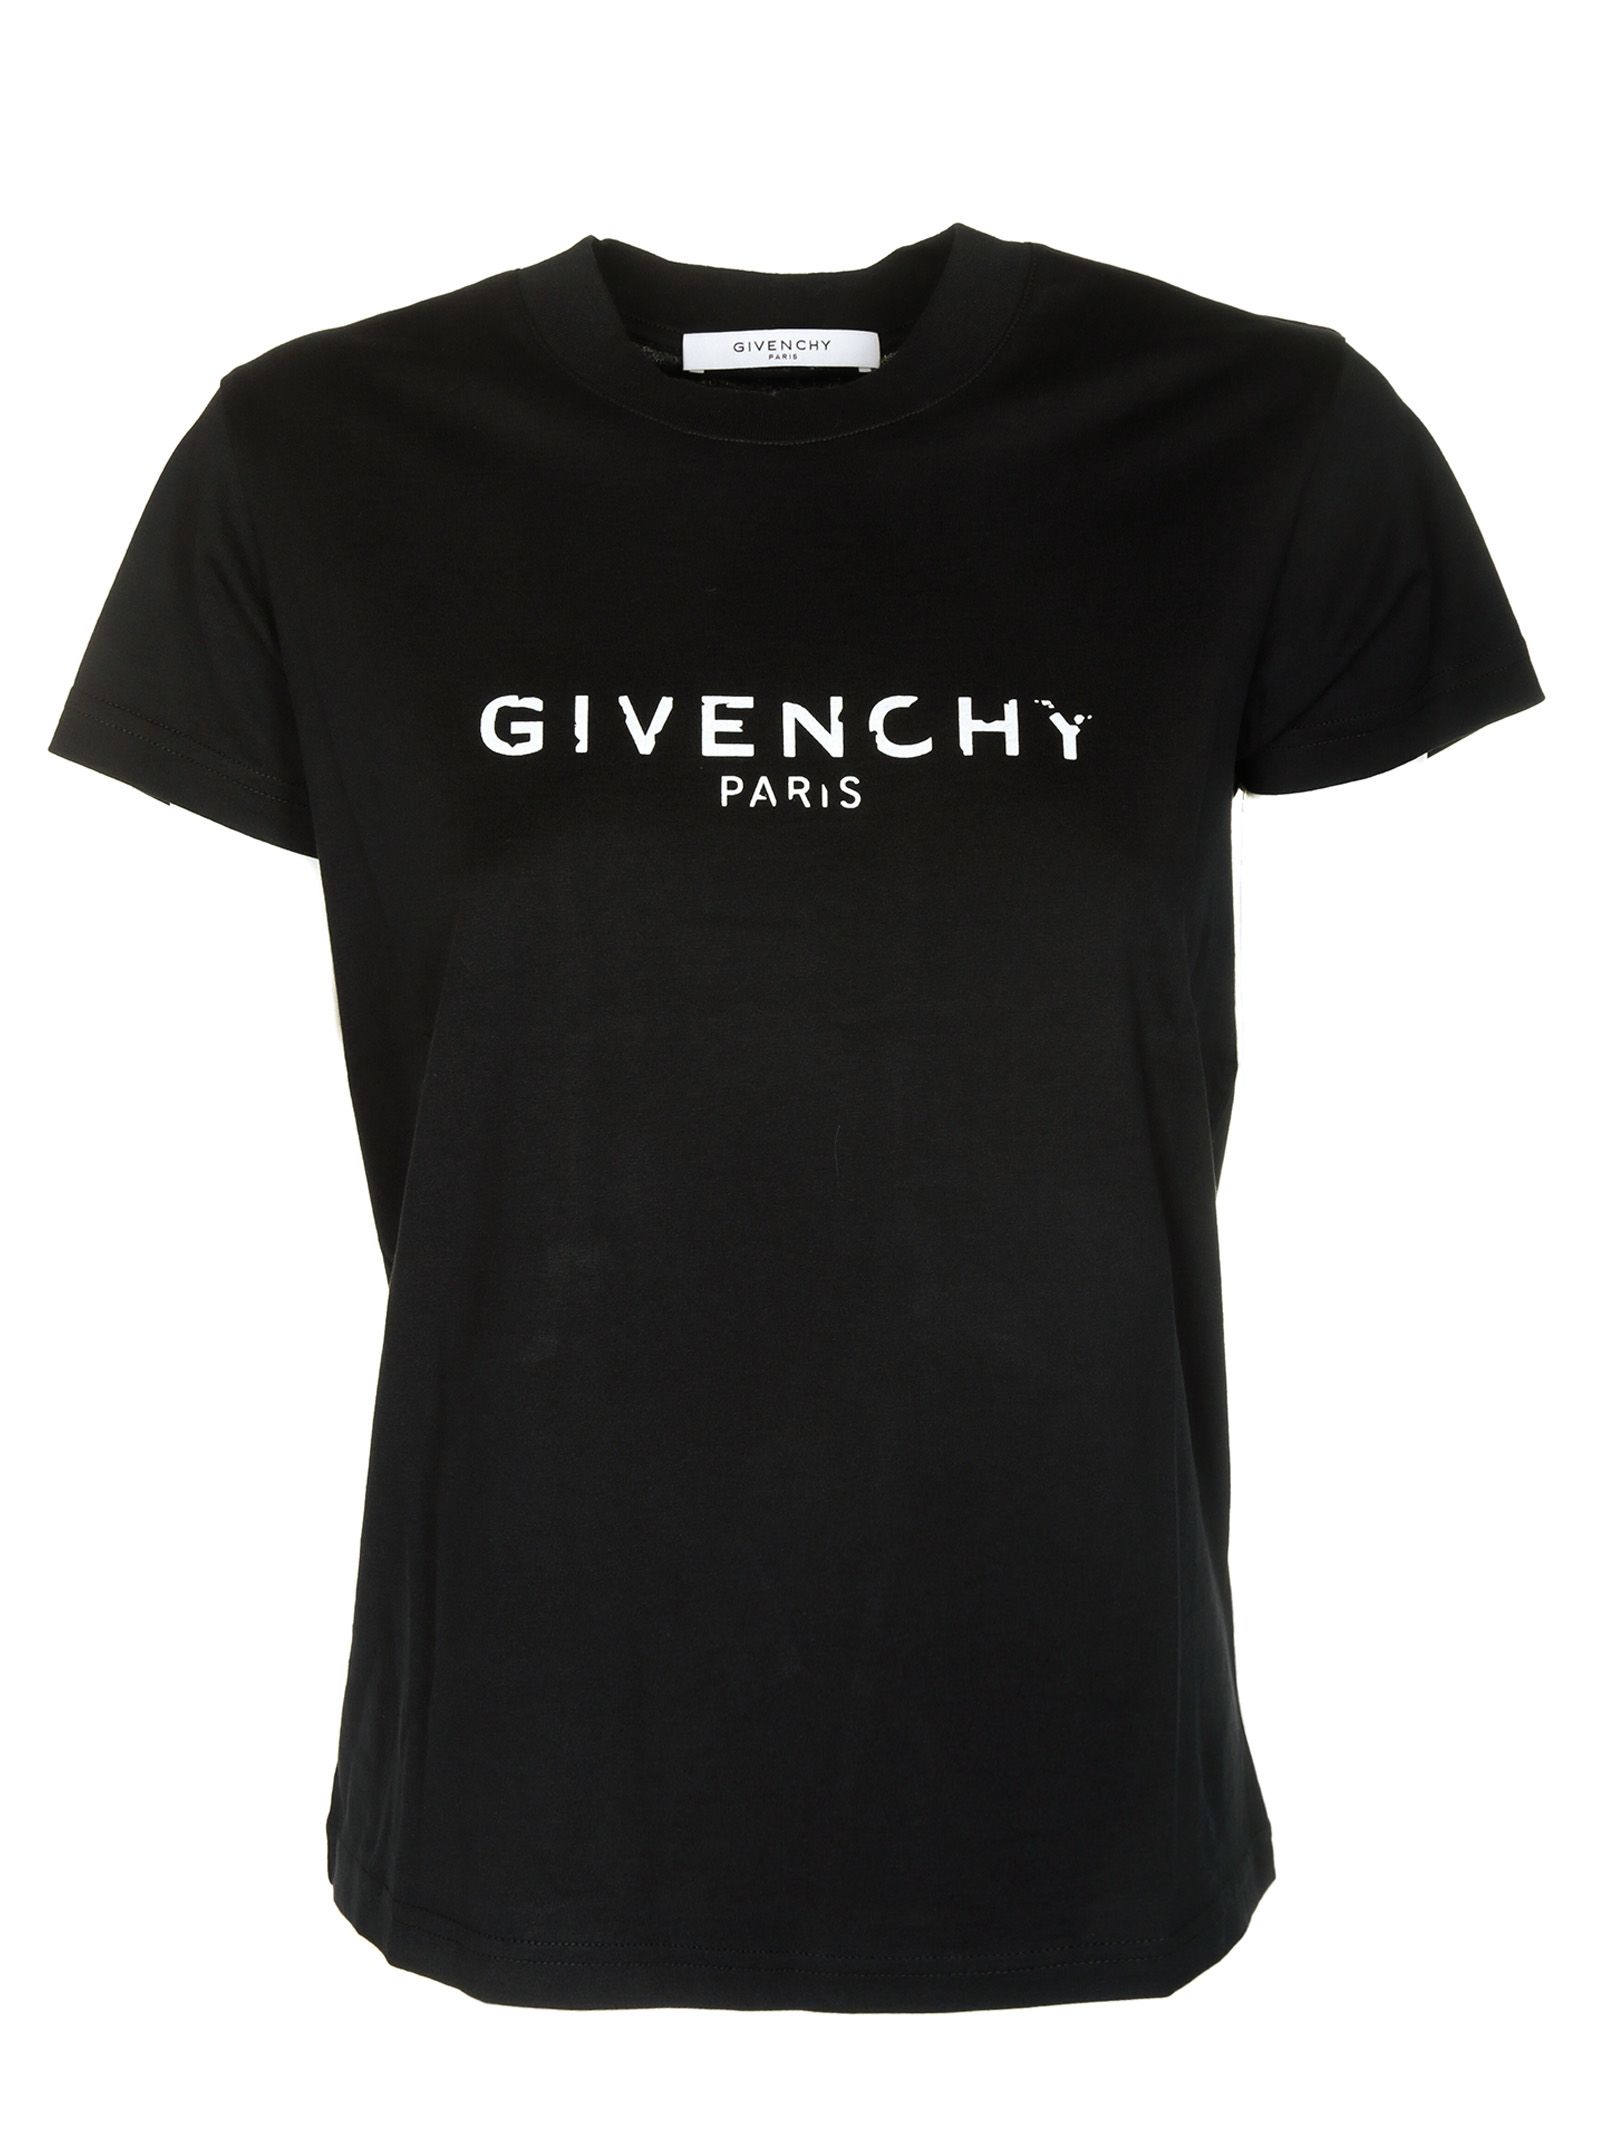 ✨新品未使用タグ付✨ GIVENCHY  TSHIRT SANS MANCHESRのシャツコレクション